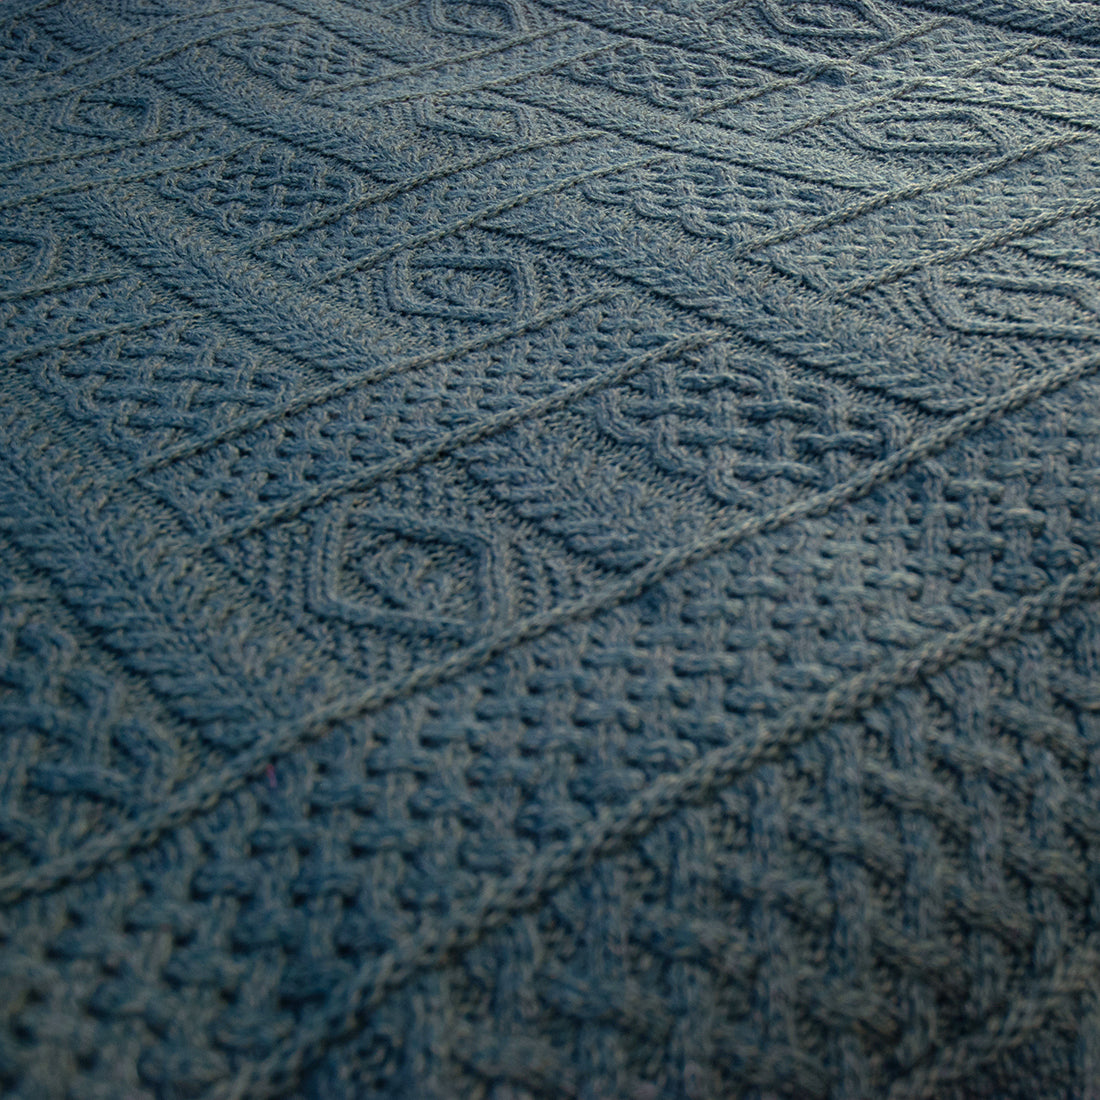 Manta 100% lana merino con flecos, tamaño 140x200cm, diseño